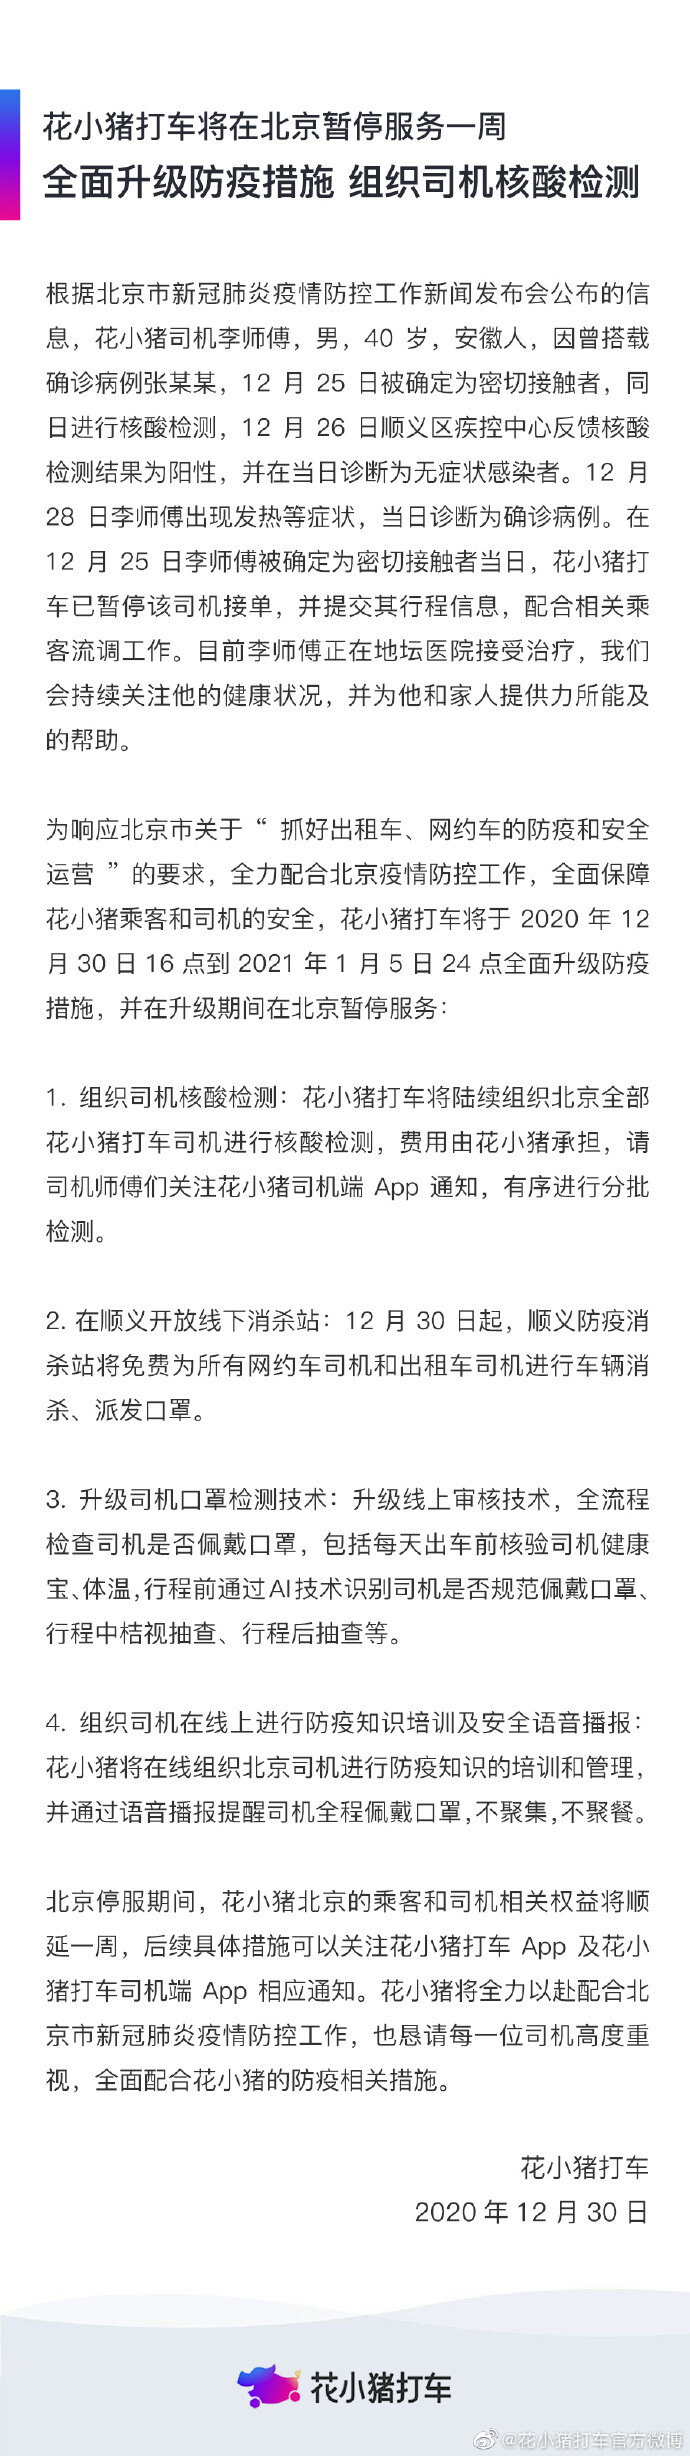 北京新增一确诊病例为花小猪网约车司机_O2O_电商之家